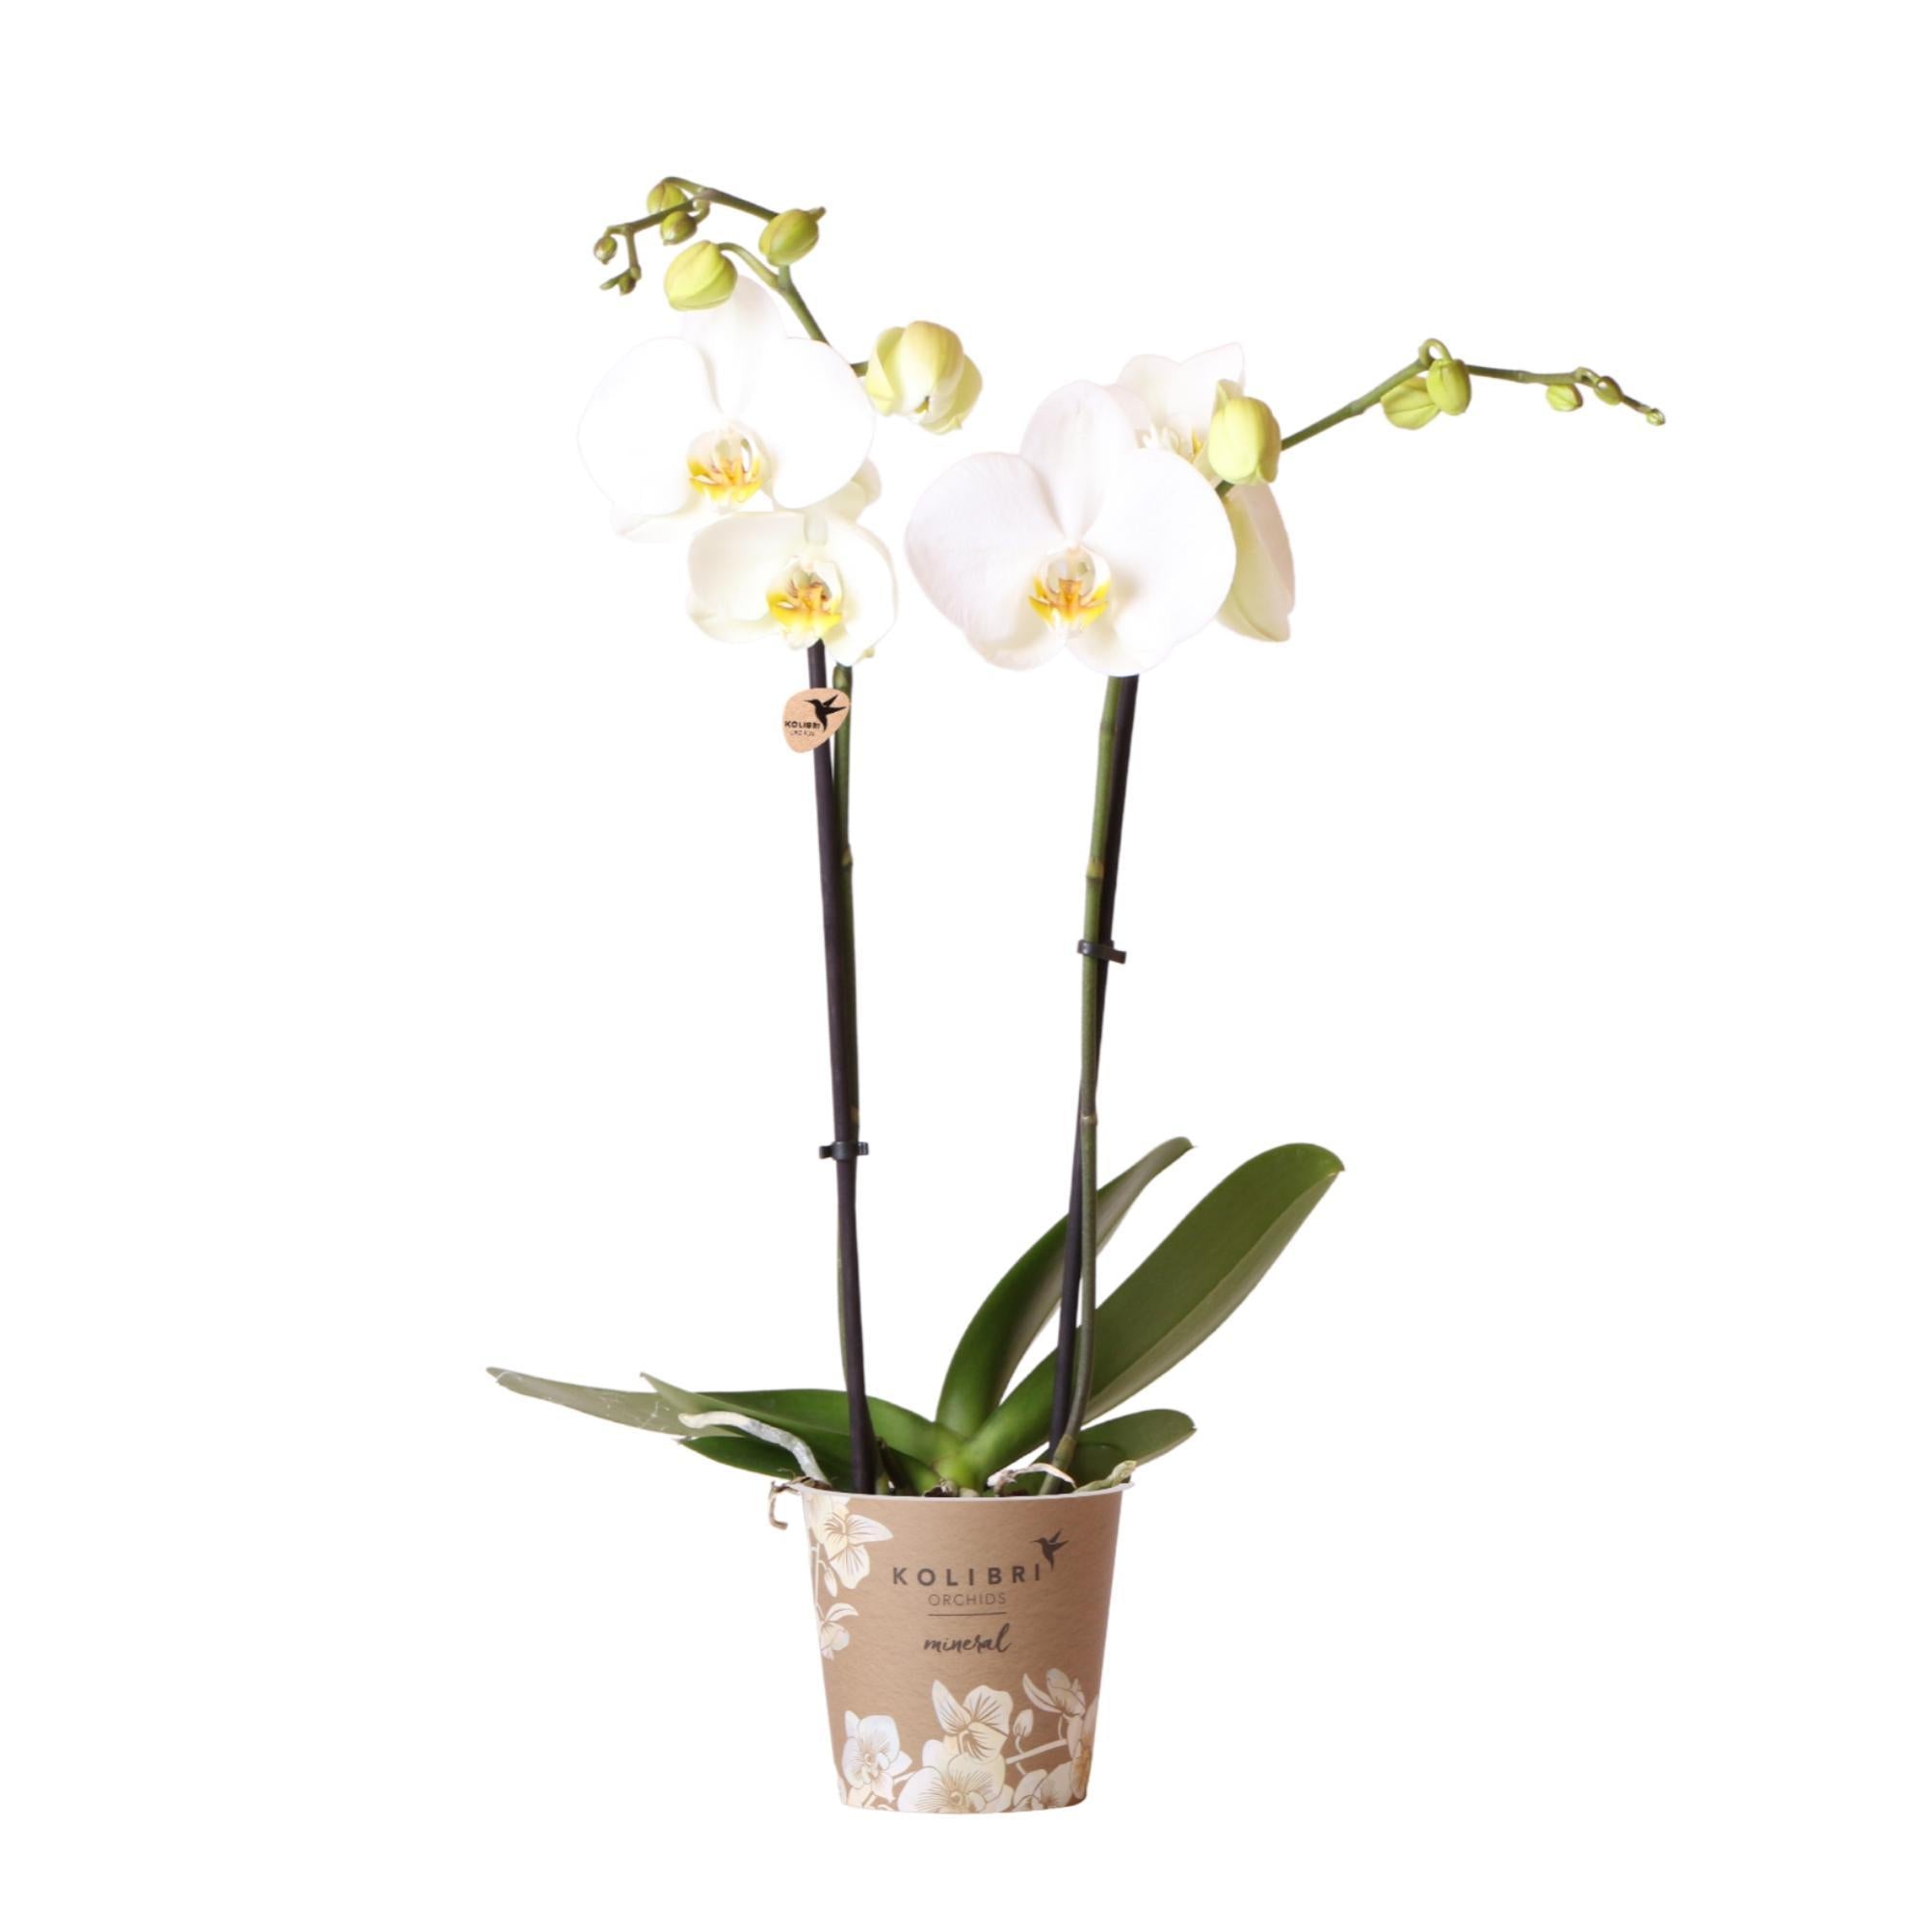 kolibriorchids Kolibri Orchids - Orchidées Colibri - Orchidée Phalaenopsis Blanche - Dame Blanche - taille du pot 12cm